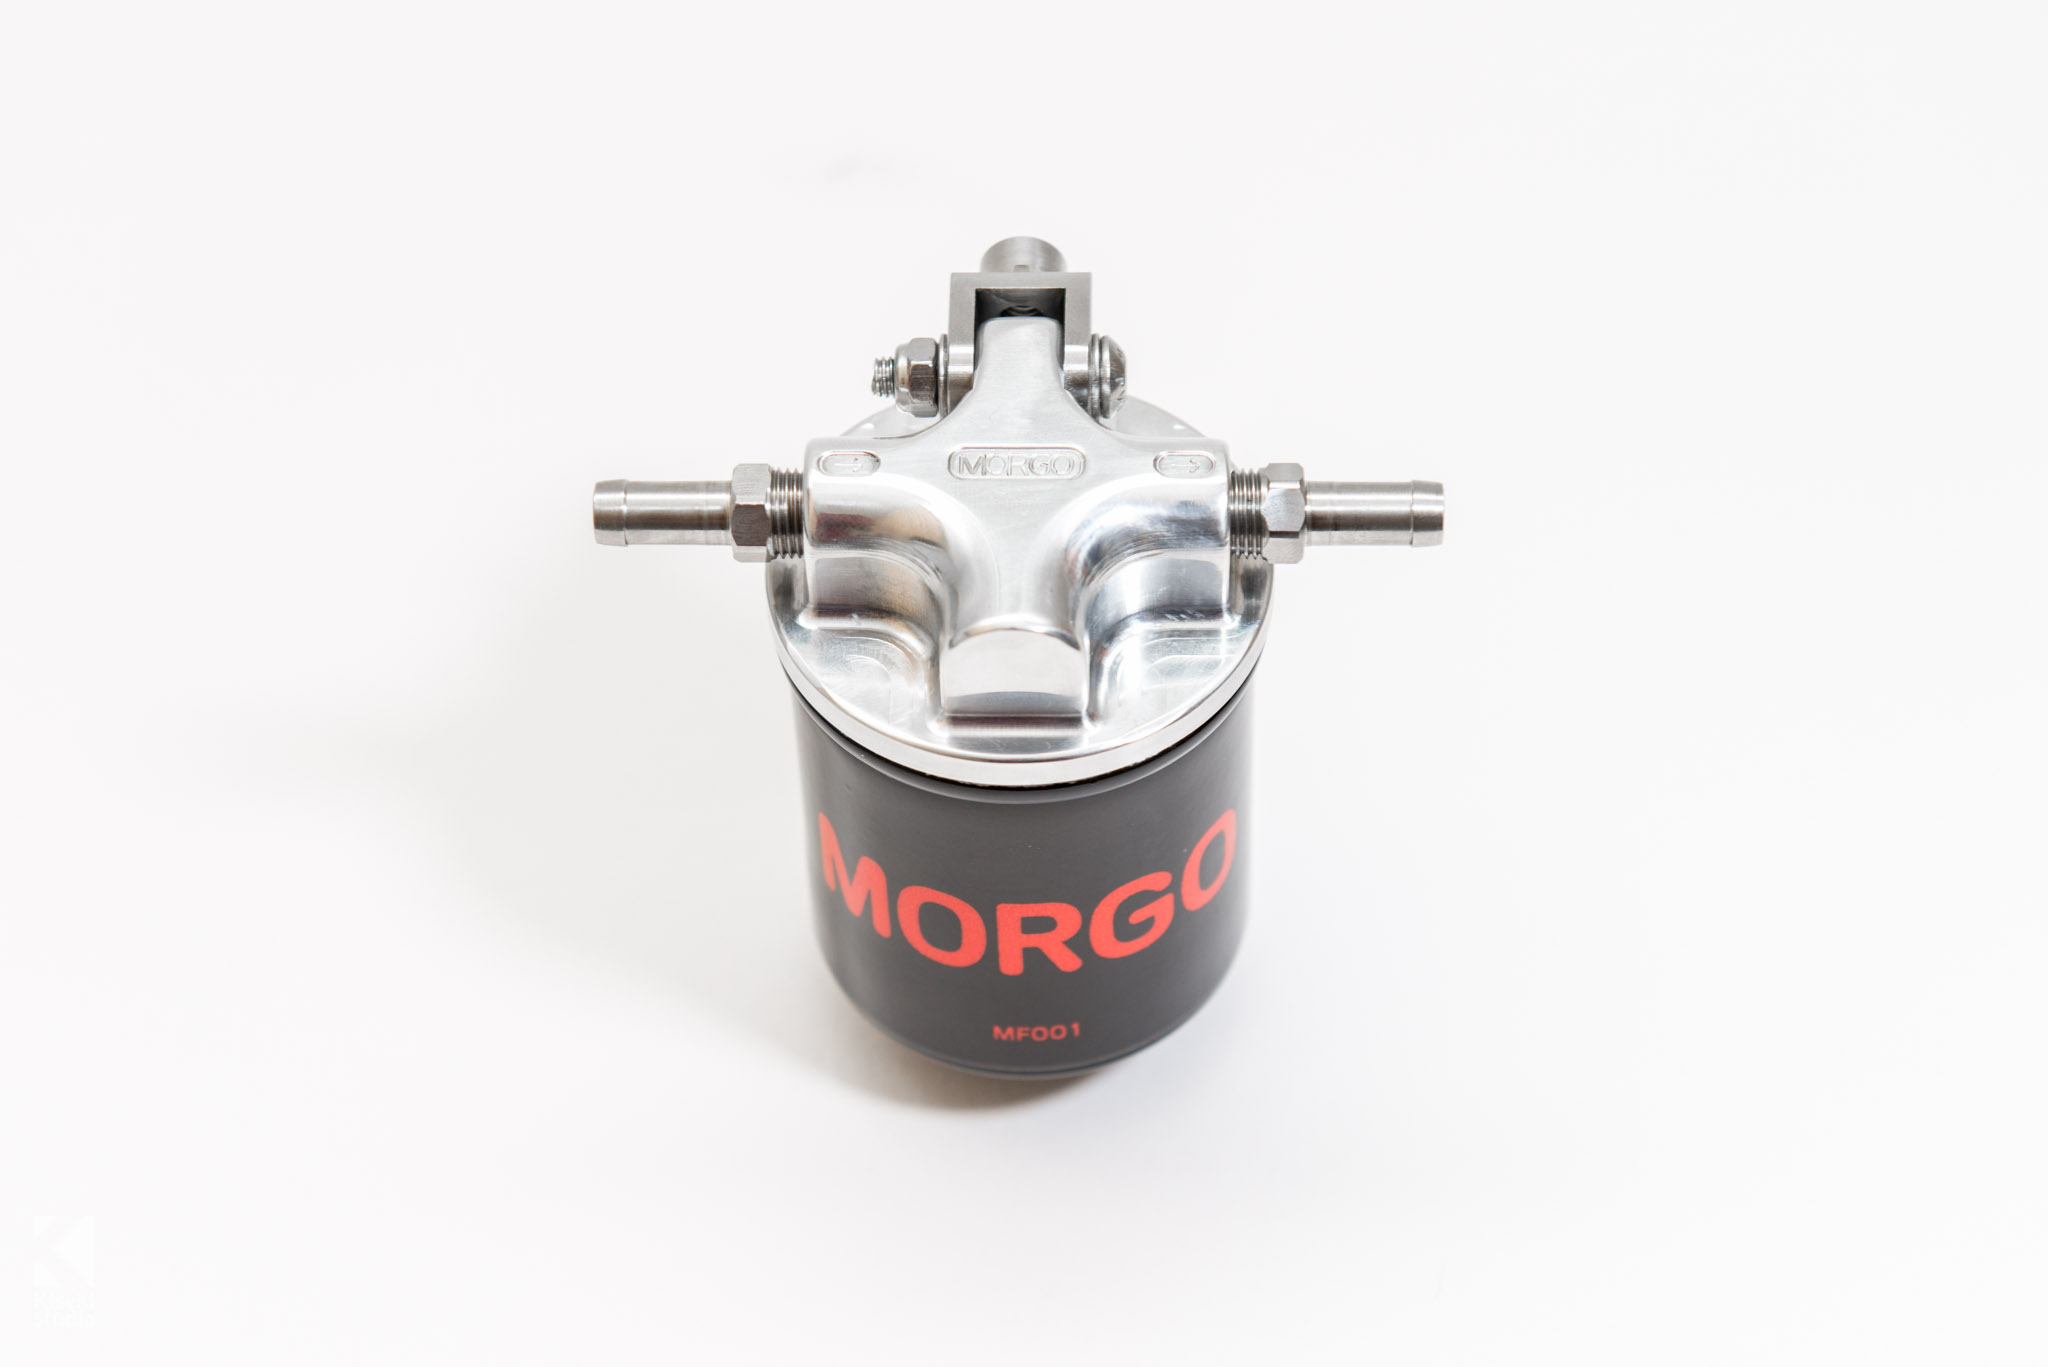 Morgo Oil Filter Kit